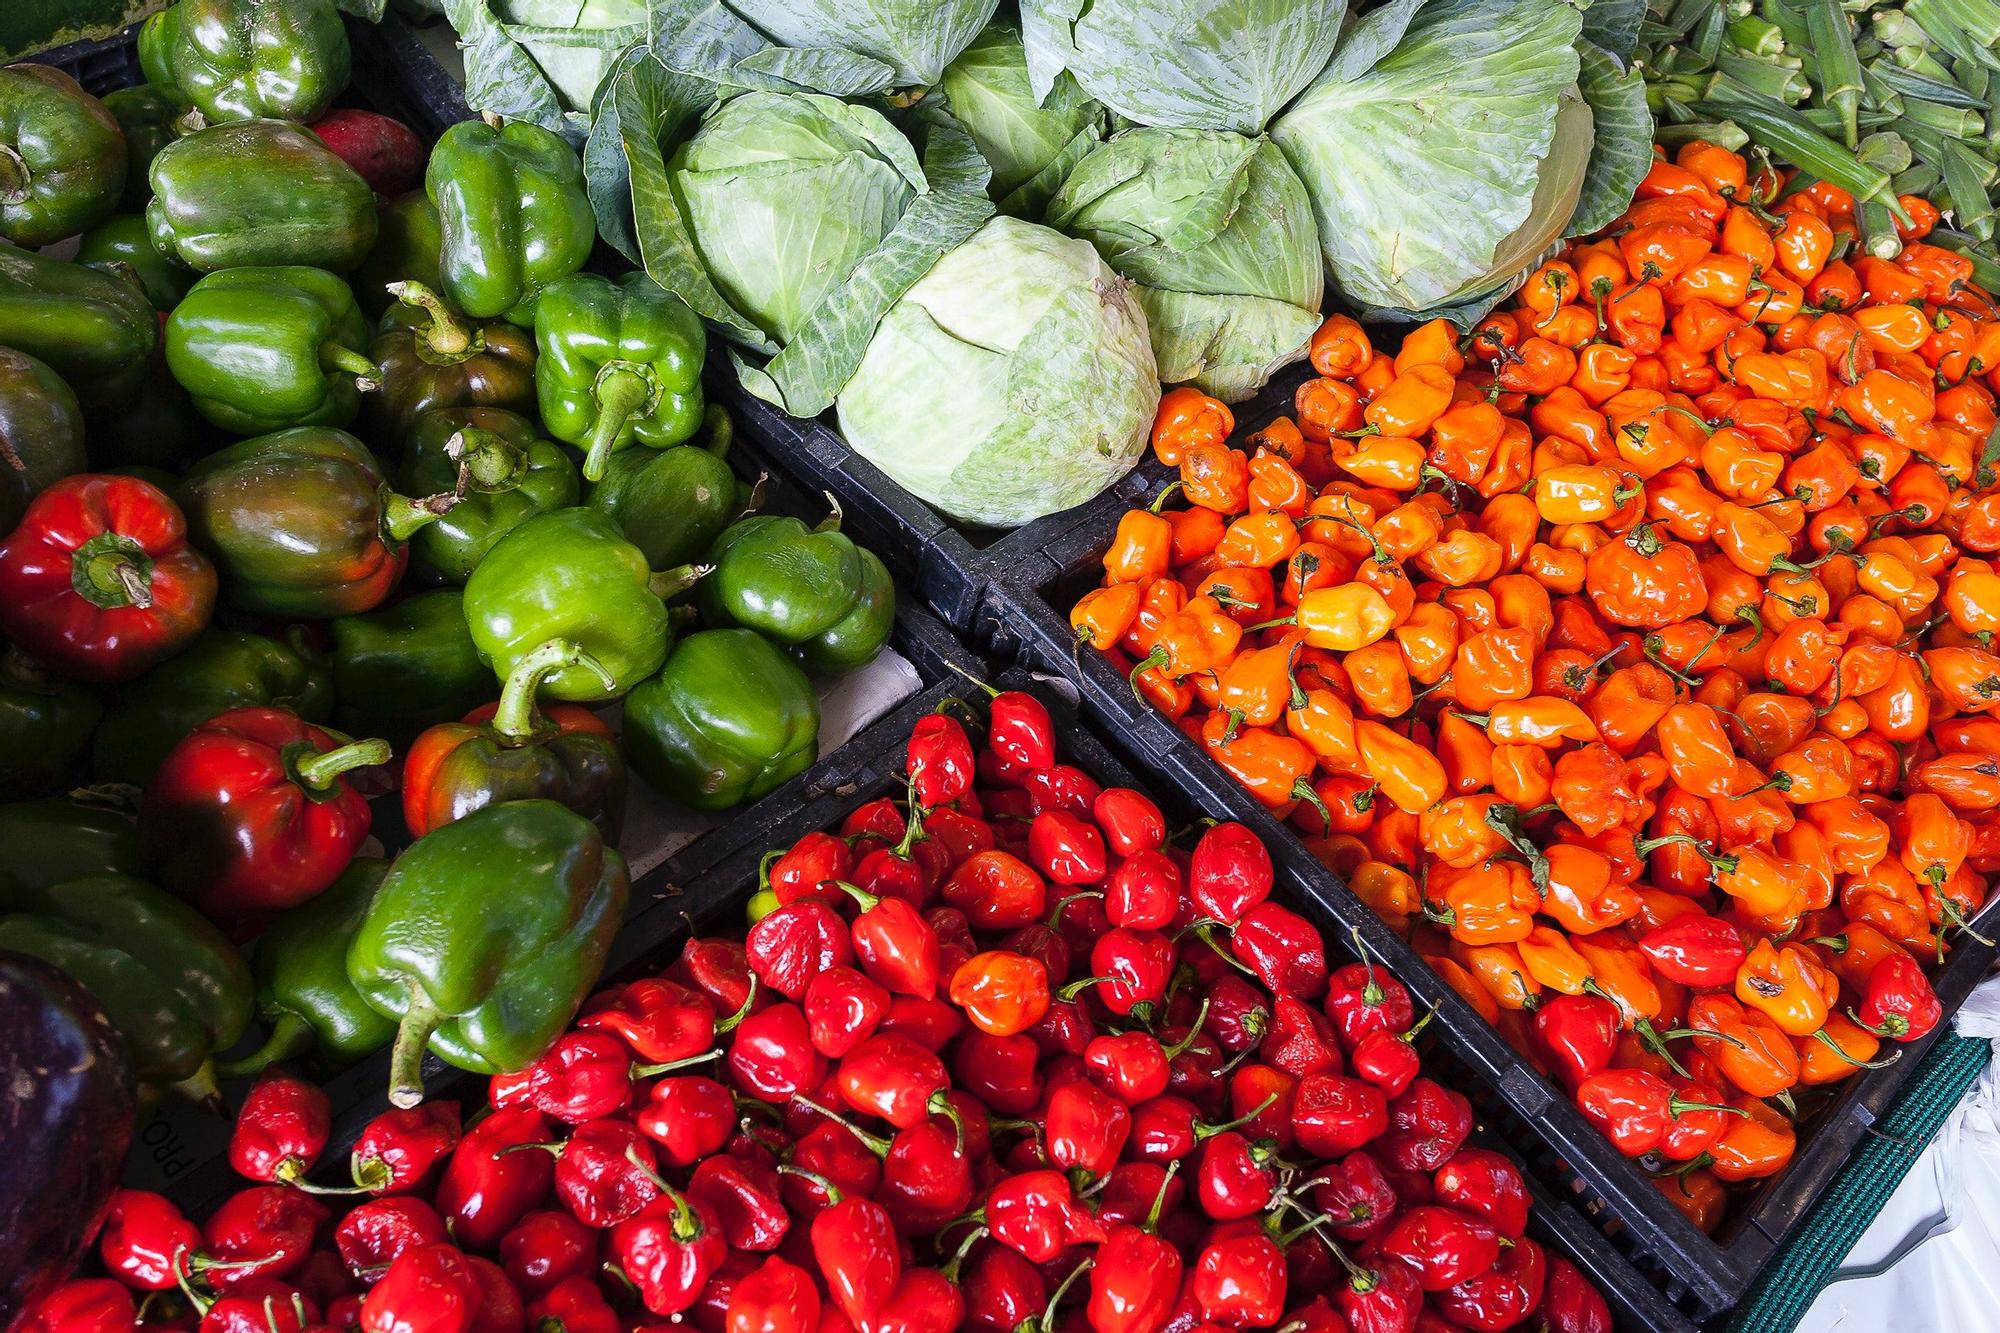 Frutas y verduras en un supermercado